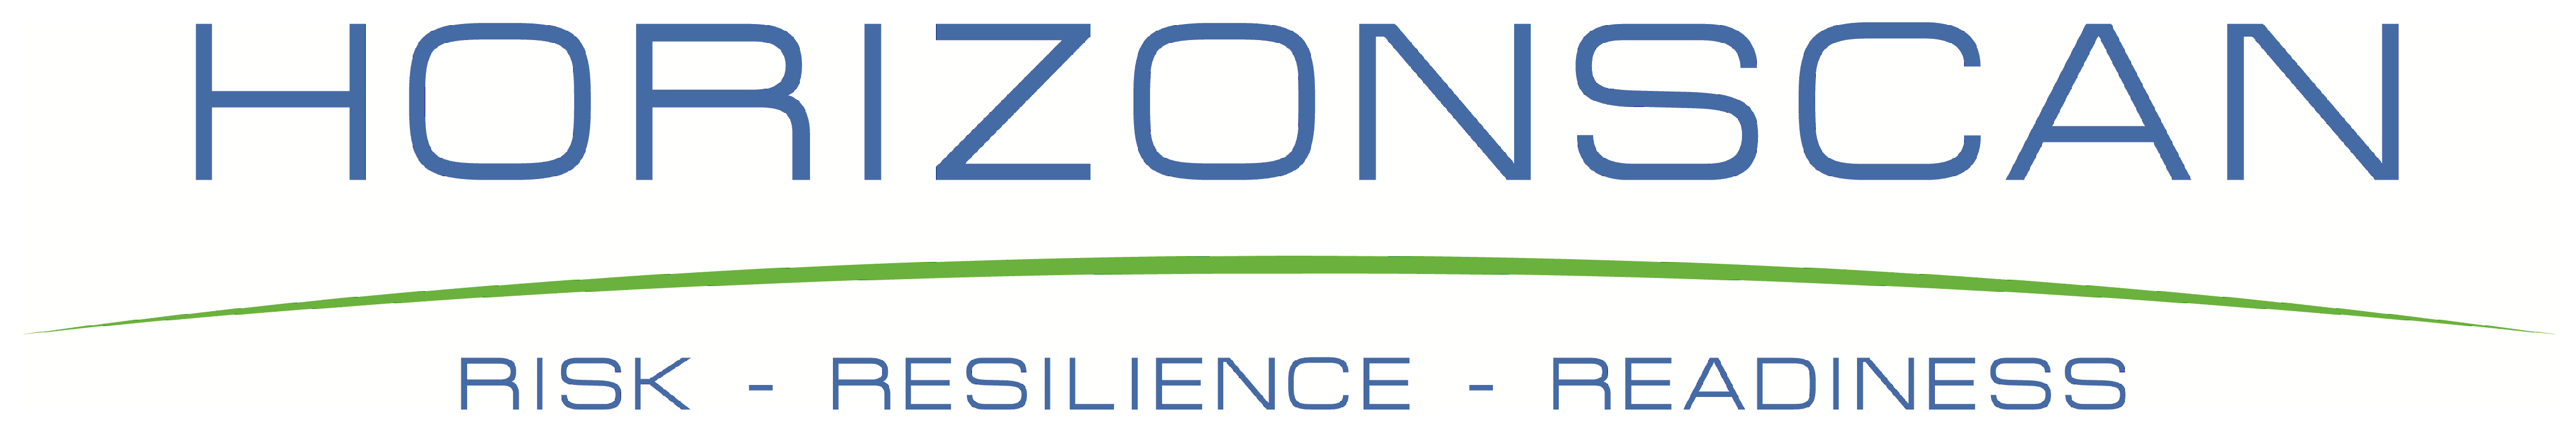 horizonscan-logo-4500-750